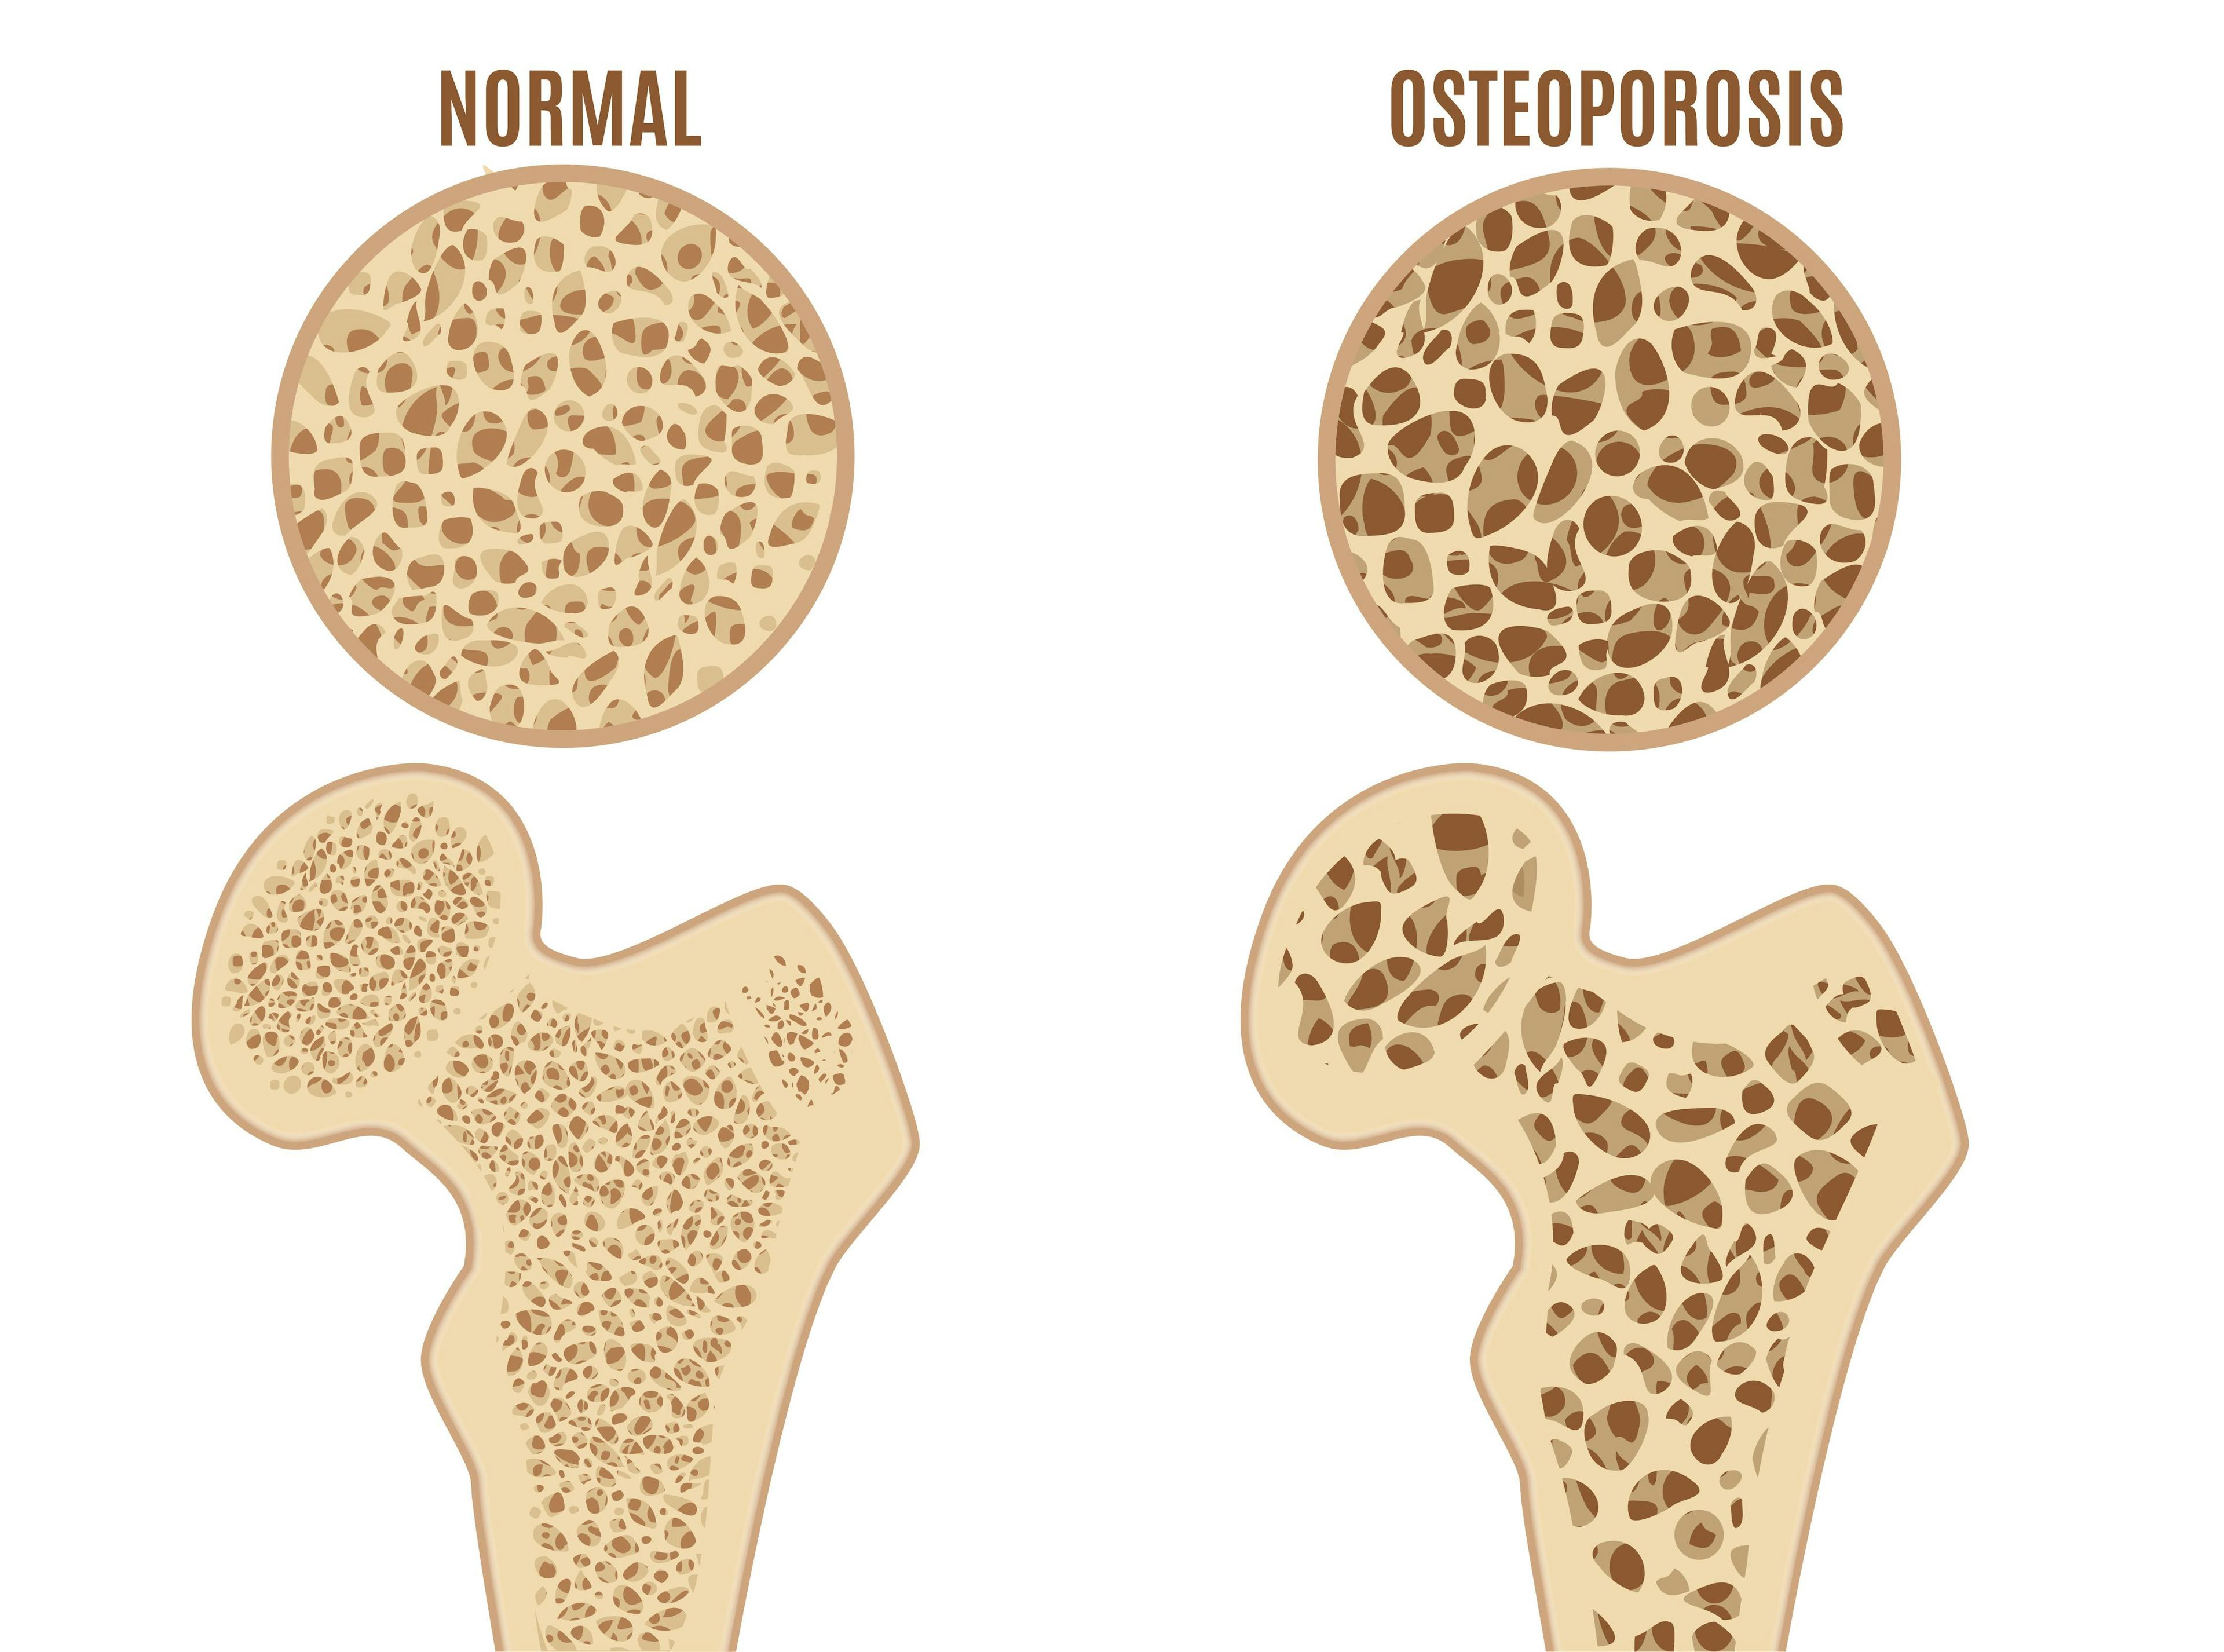 comparison of normal bone to osteoporotic bone | Image credit: ©bigmouse108 stock.adobe.com